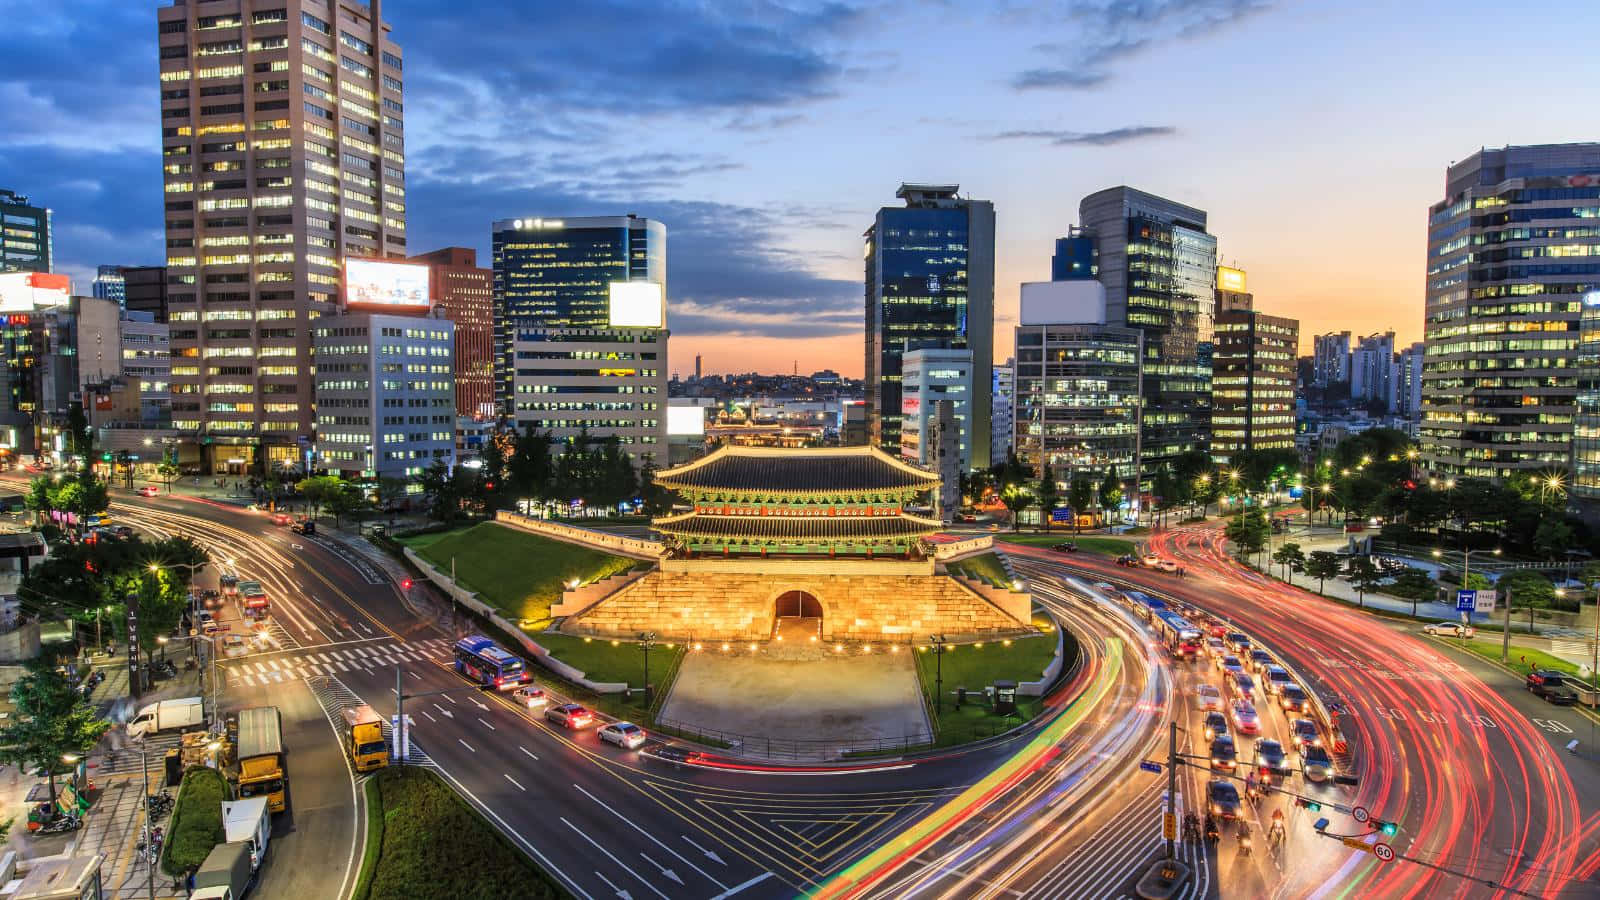 Impresionantepanorama Urbano De Una Ciudad De Corea Del Sur.